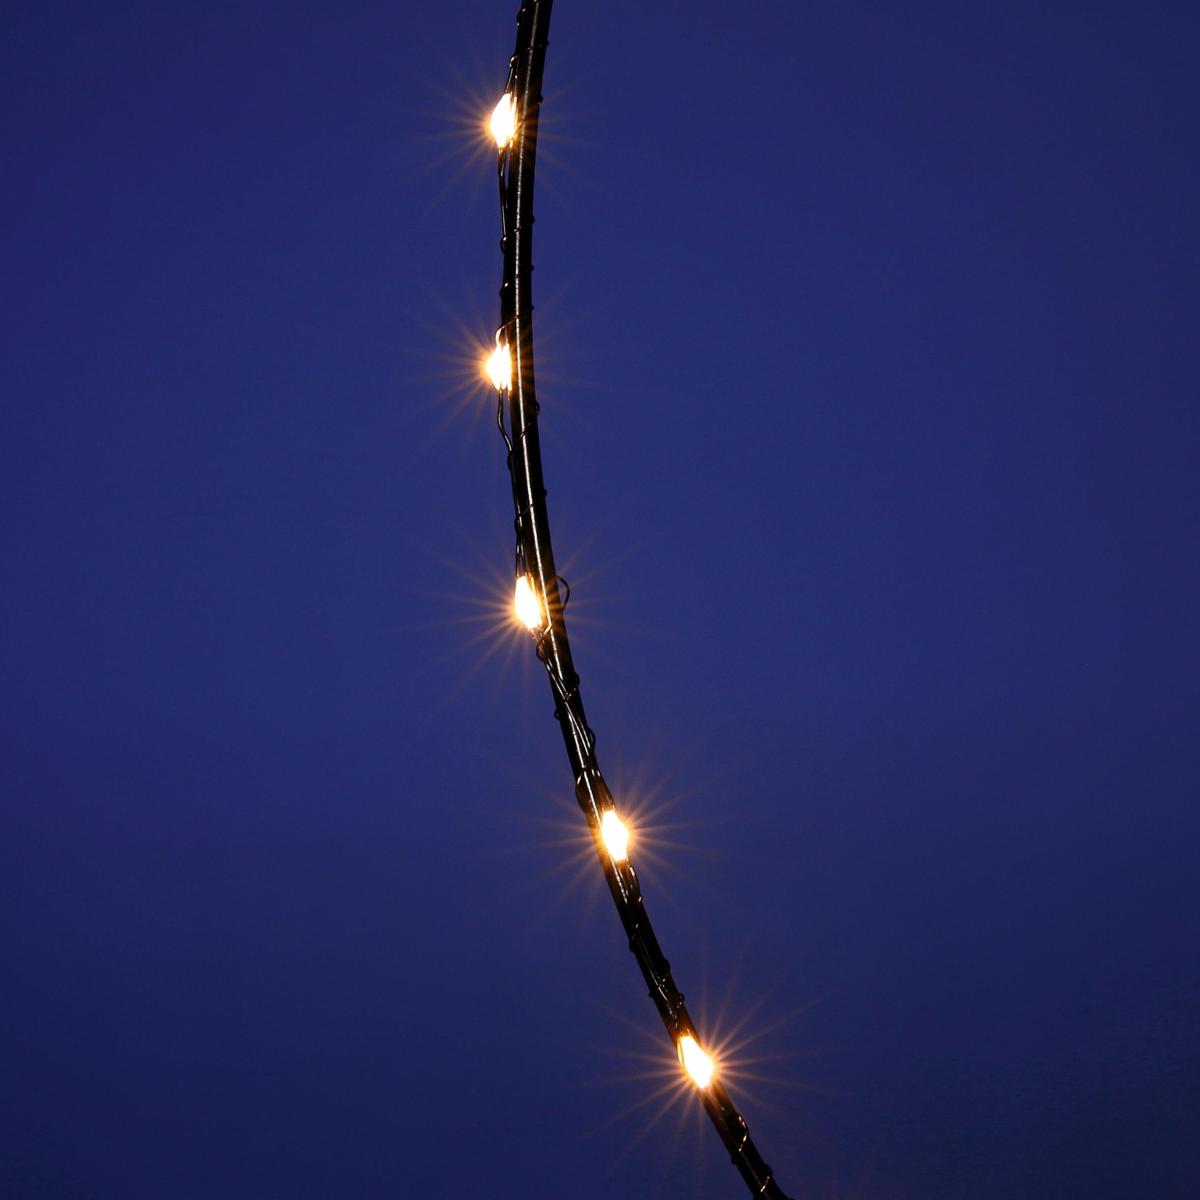 LED-Lichtring für außen, 50 cm Ø